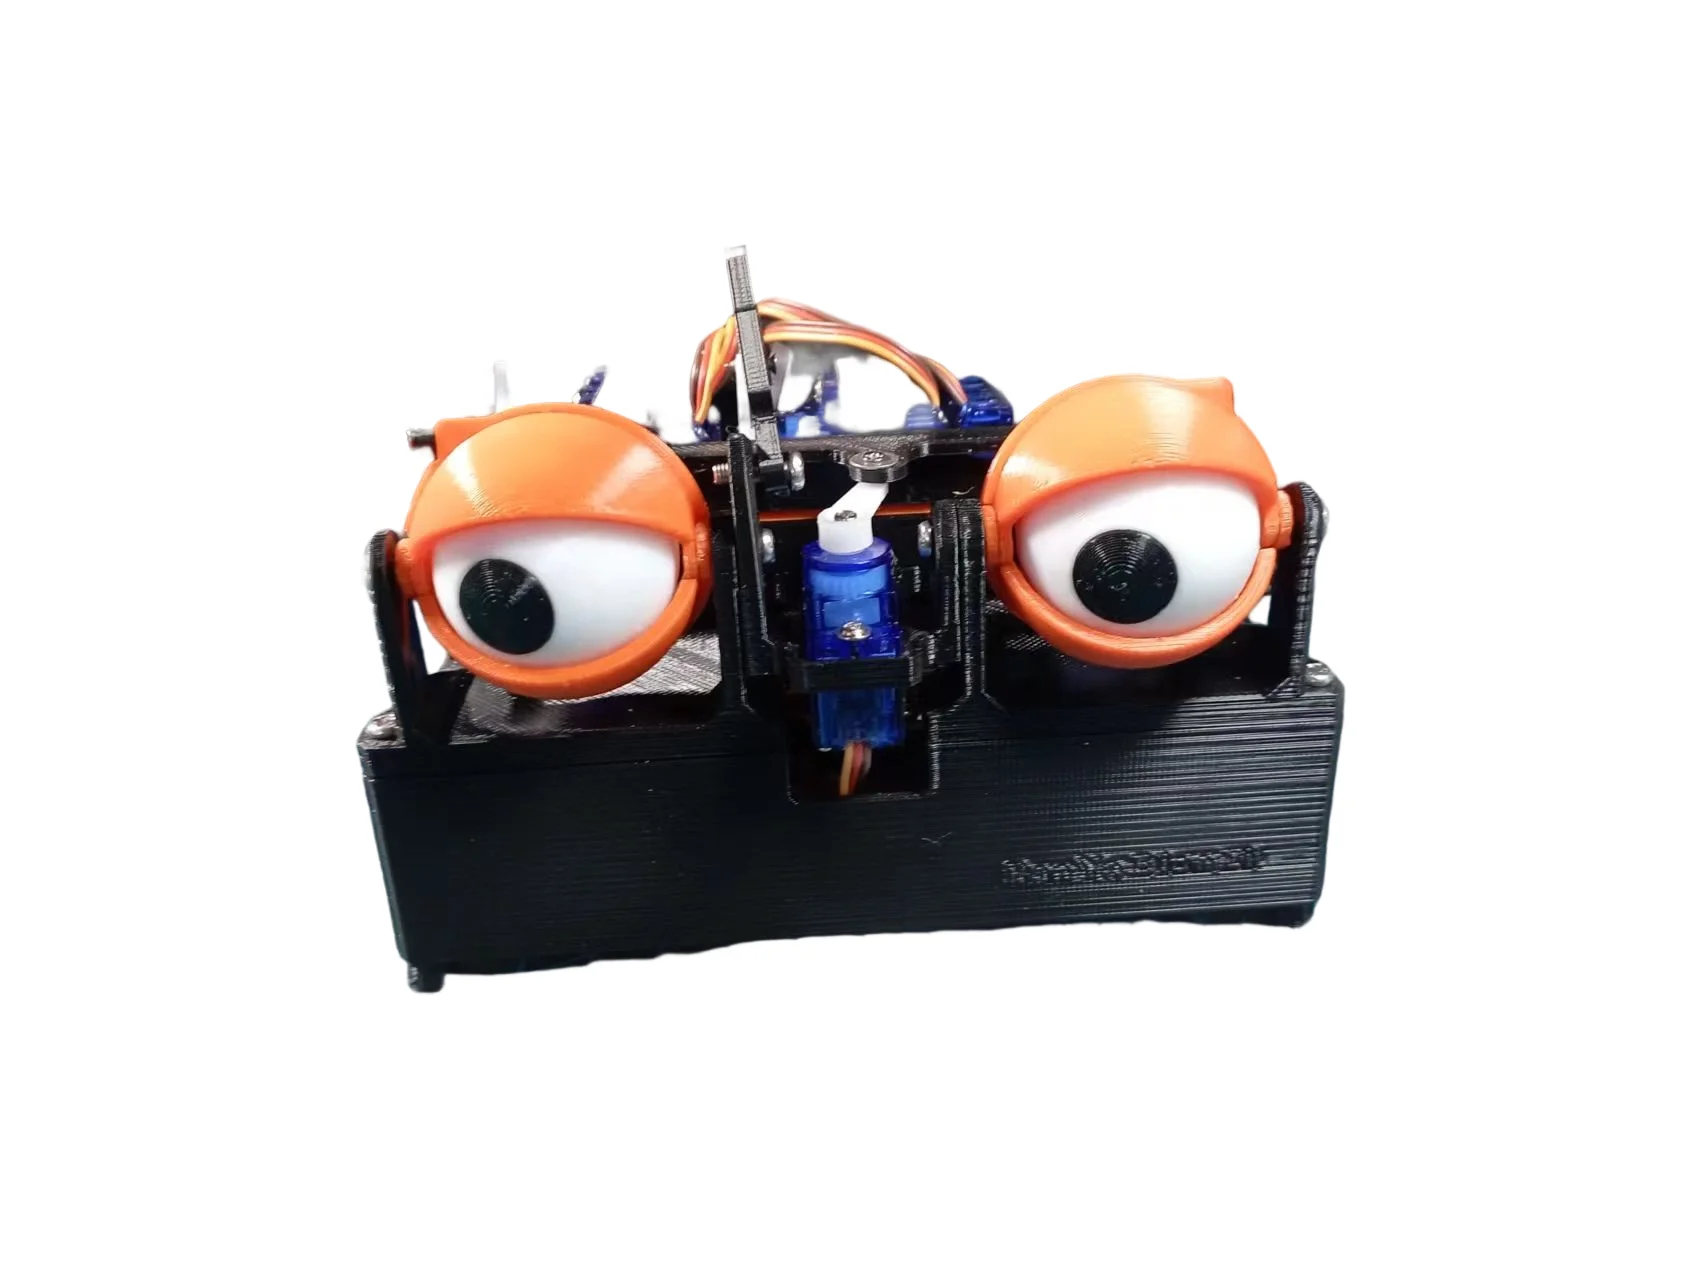 комплект для самостоятельной сборки 6 dof robotic eye для arduino bionic robot sg90 сервопривод с приложением и wi fi управлением обучающие игрушки с открытым Комплект для самостоятельной сборки с роботизированным глазом ESP8266 6 DOF для робота Arduino с сервоприводом SG90 APP/Web Wi-Fi контроль 3D печать открытым исходным кодом стартовый набор